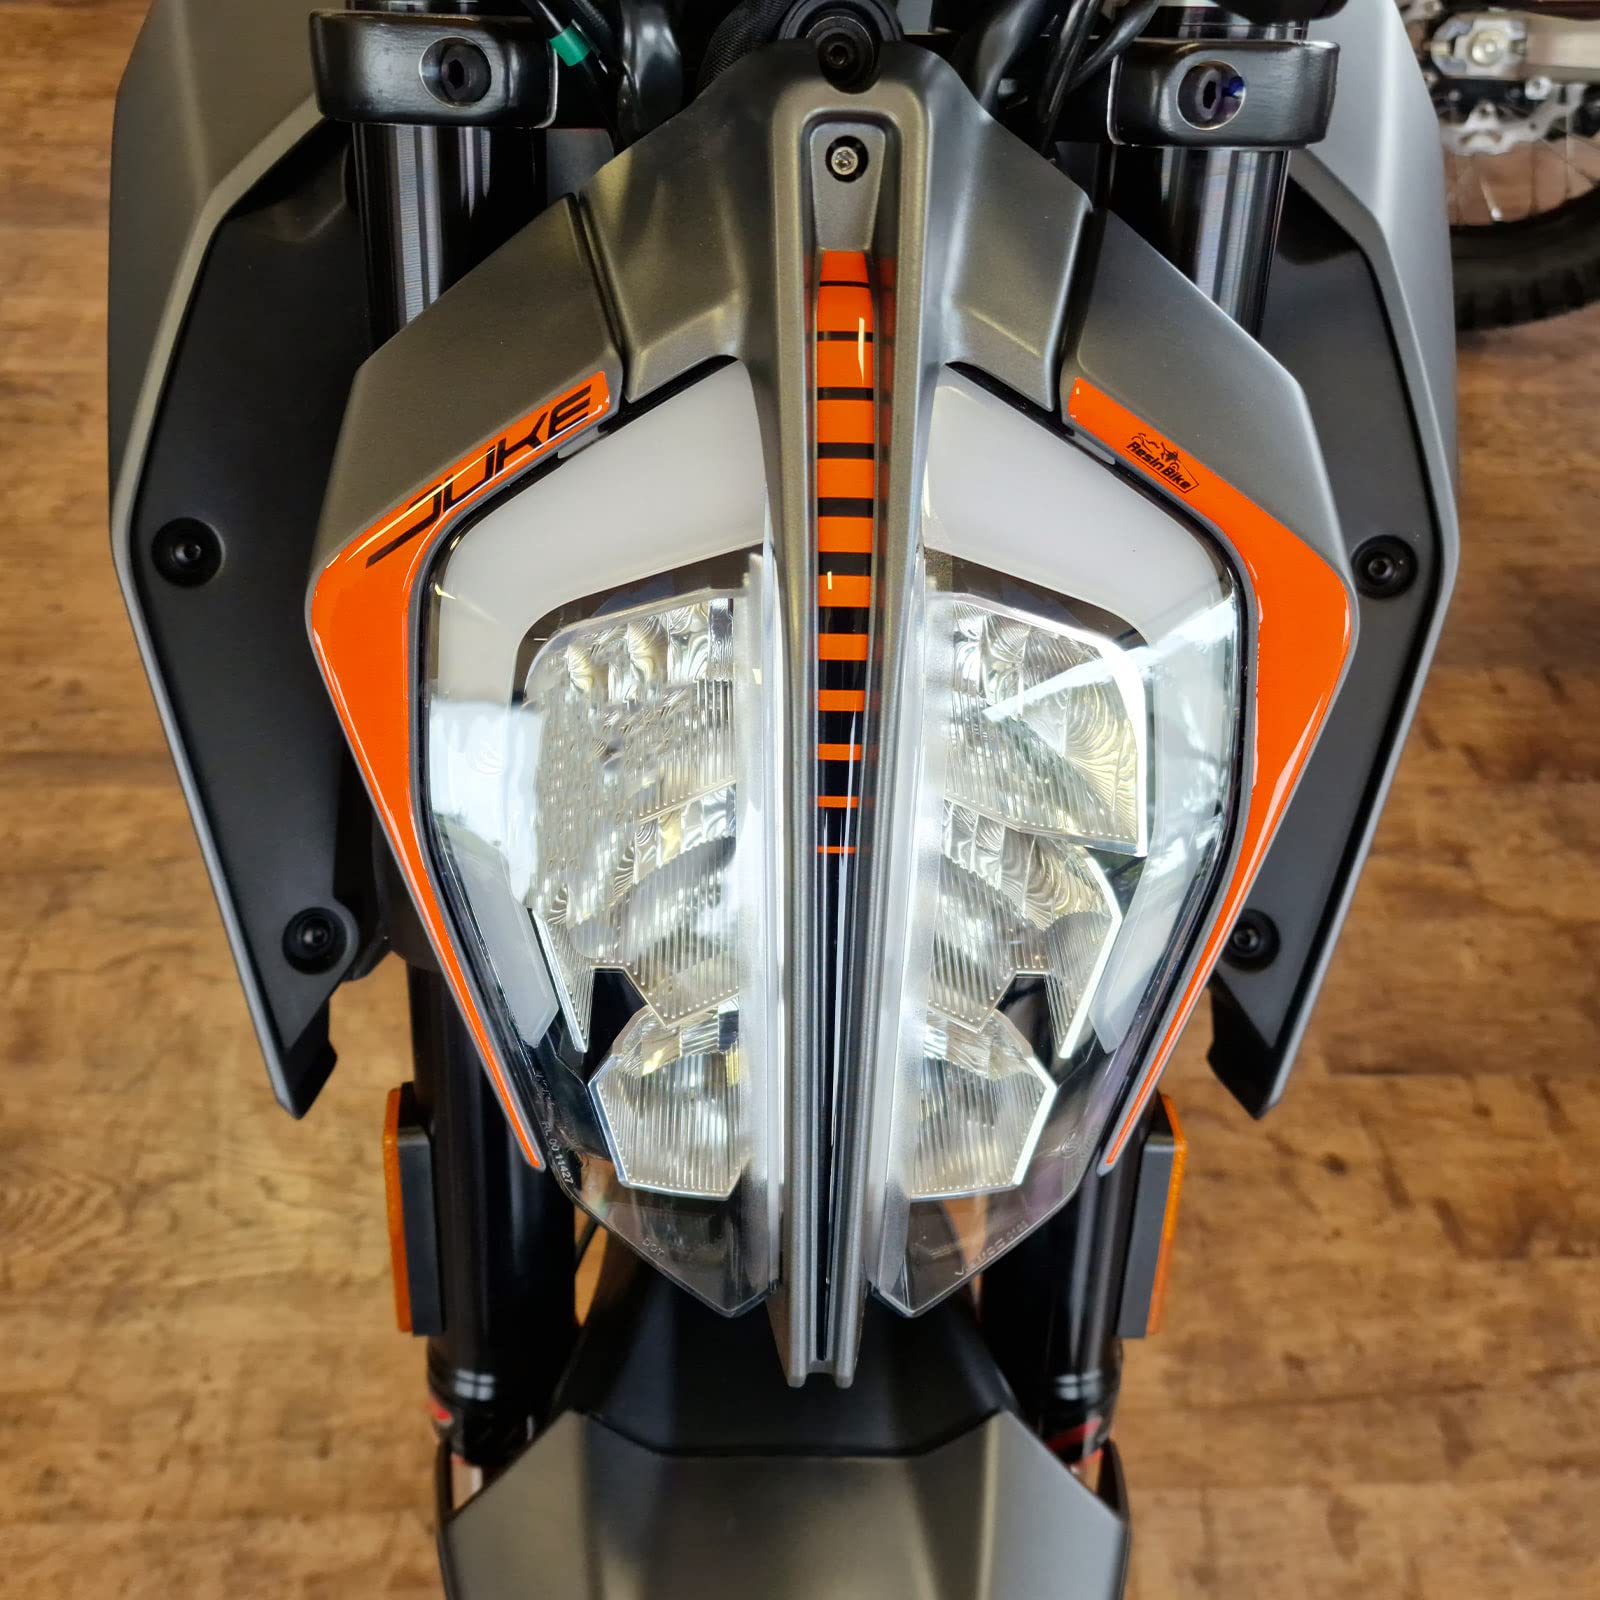 Resin Bike Aufkleber für Motorrad Kompatibel mit KTM Duke 125 200 250 390 2021-2022. Rücklichtschutz vor Stößen und Kratzern. 3D-Harzklebstoff Hergestellt in Italien - Stickers von Resin Bike